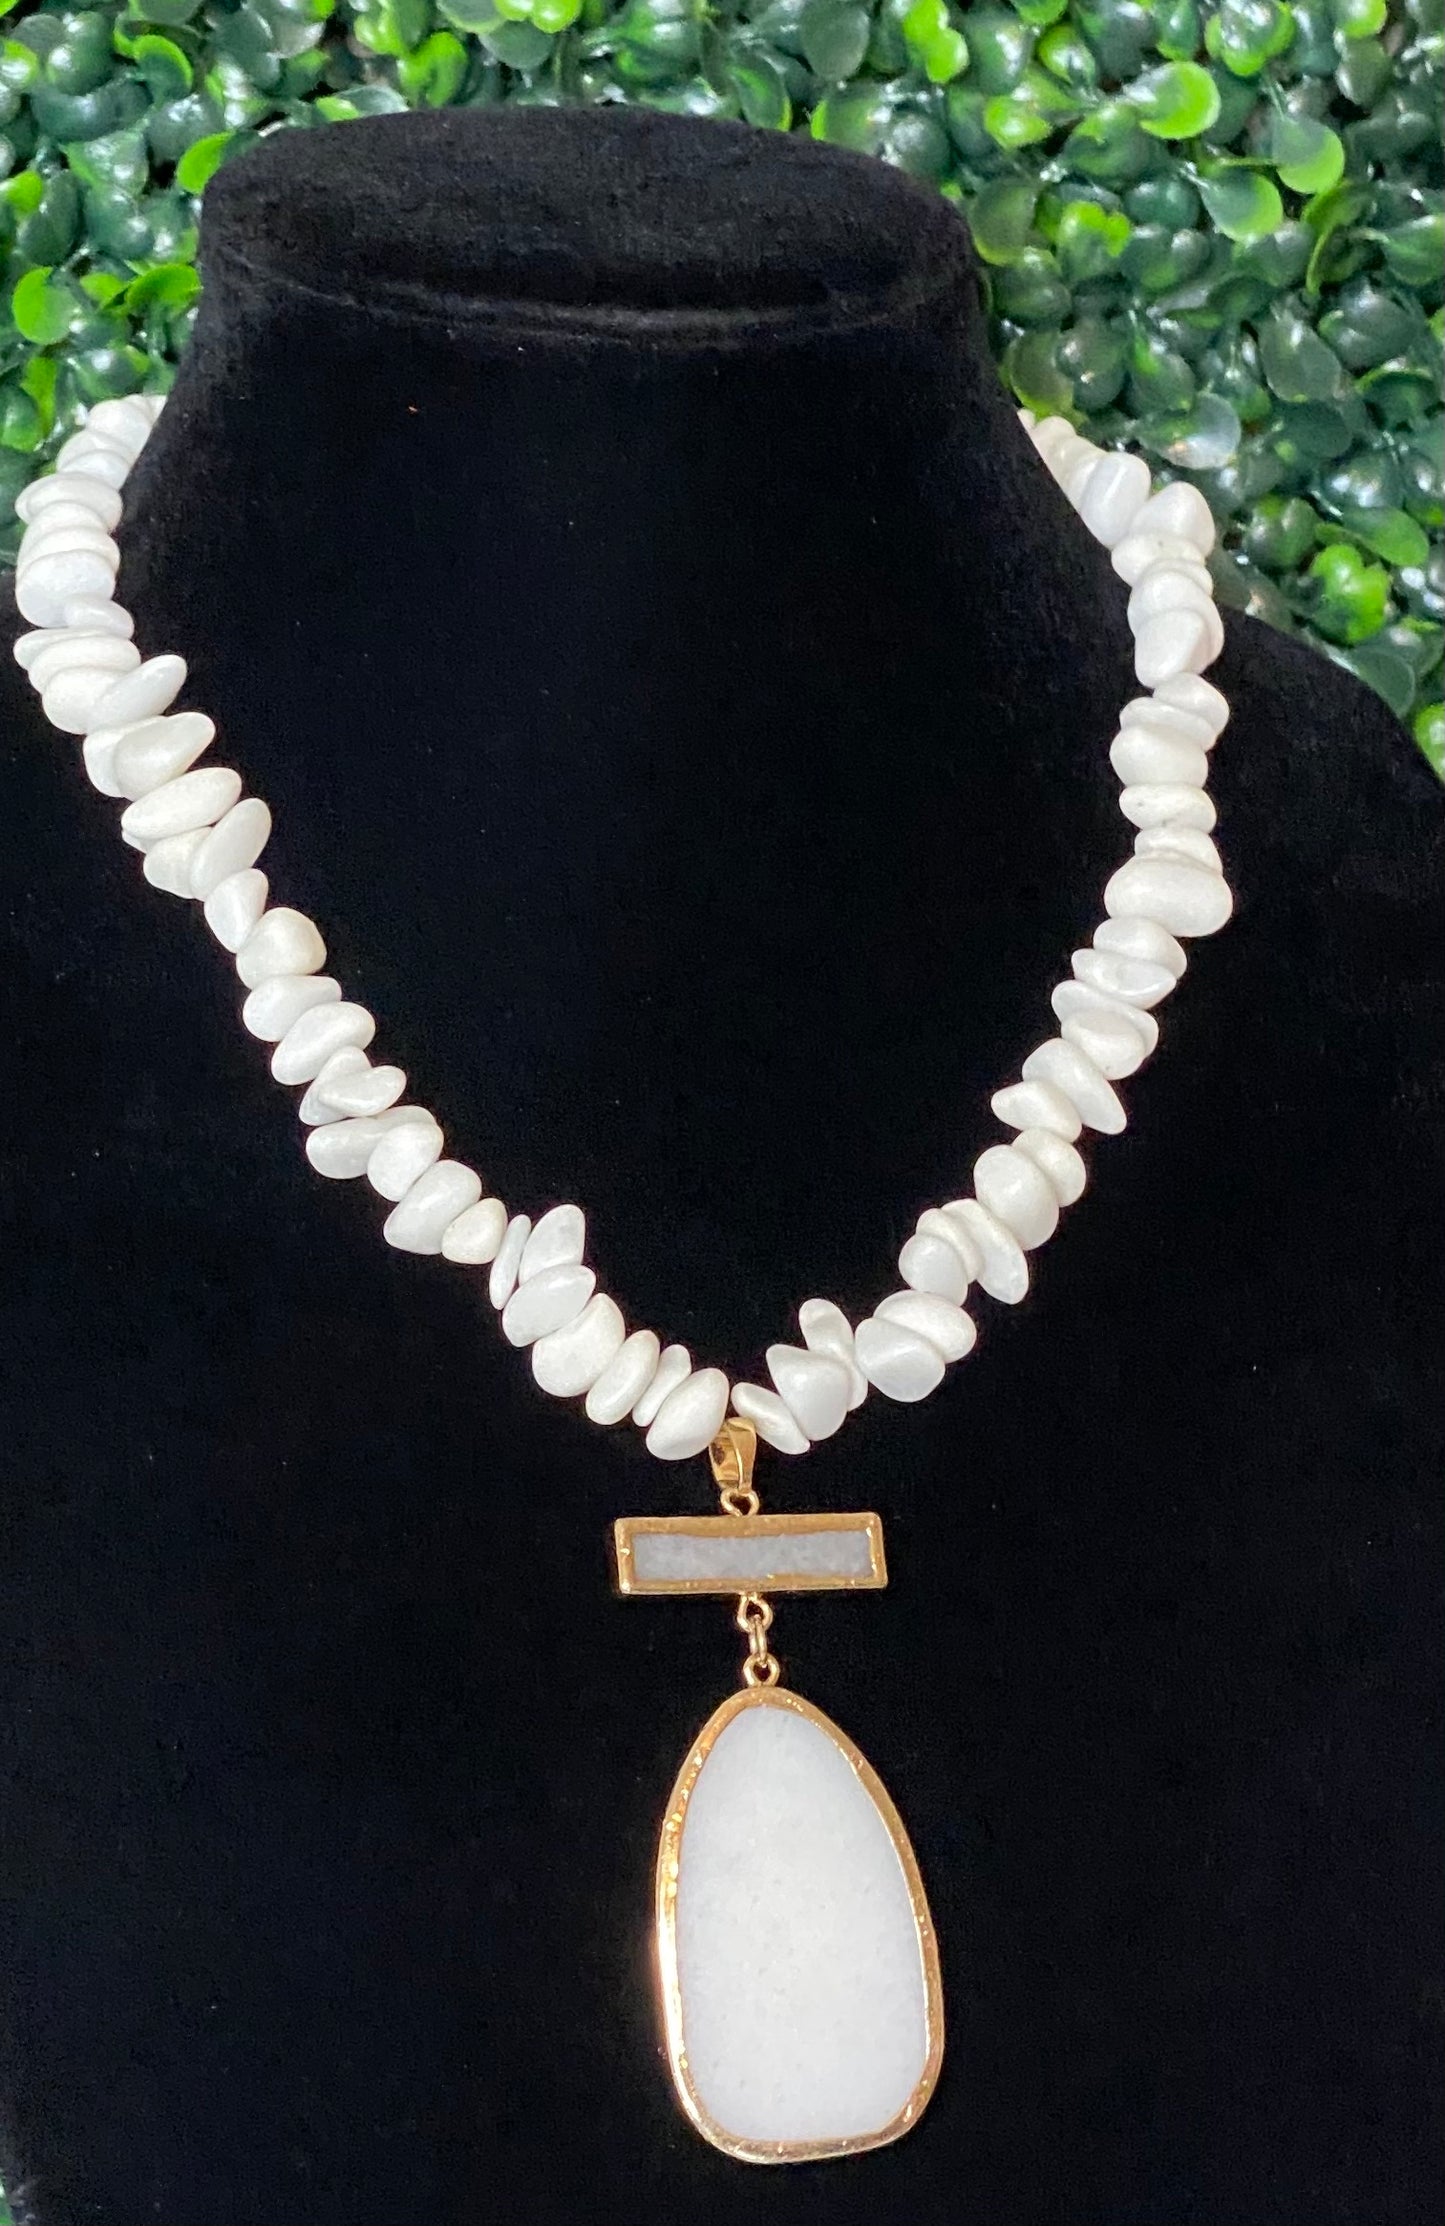 Snow Quartz Necklace with Pendant